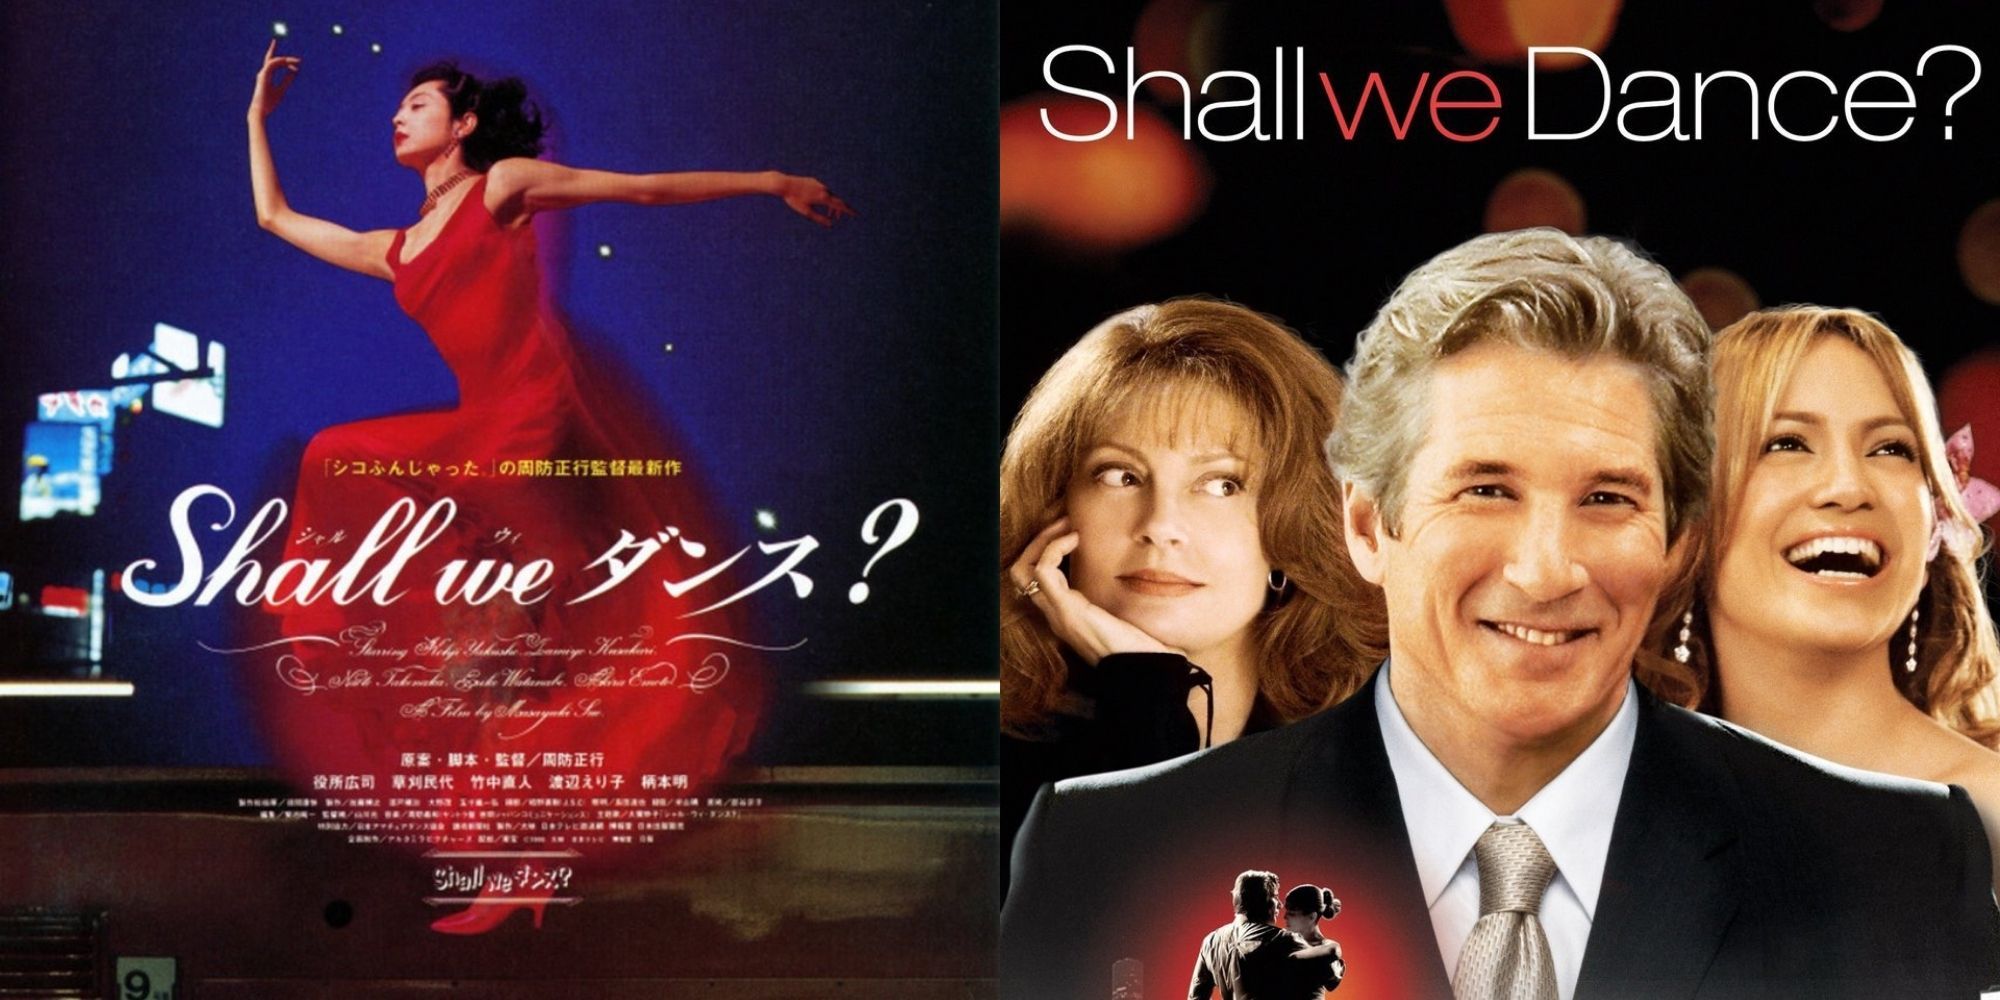 Shall We Dance (1996) and (2004)